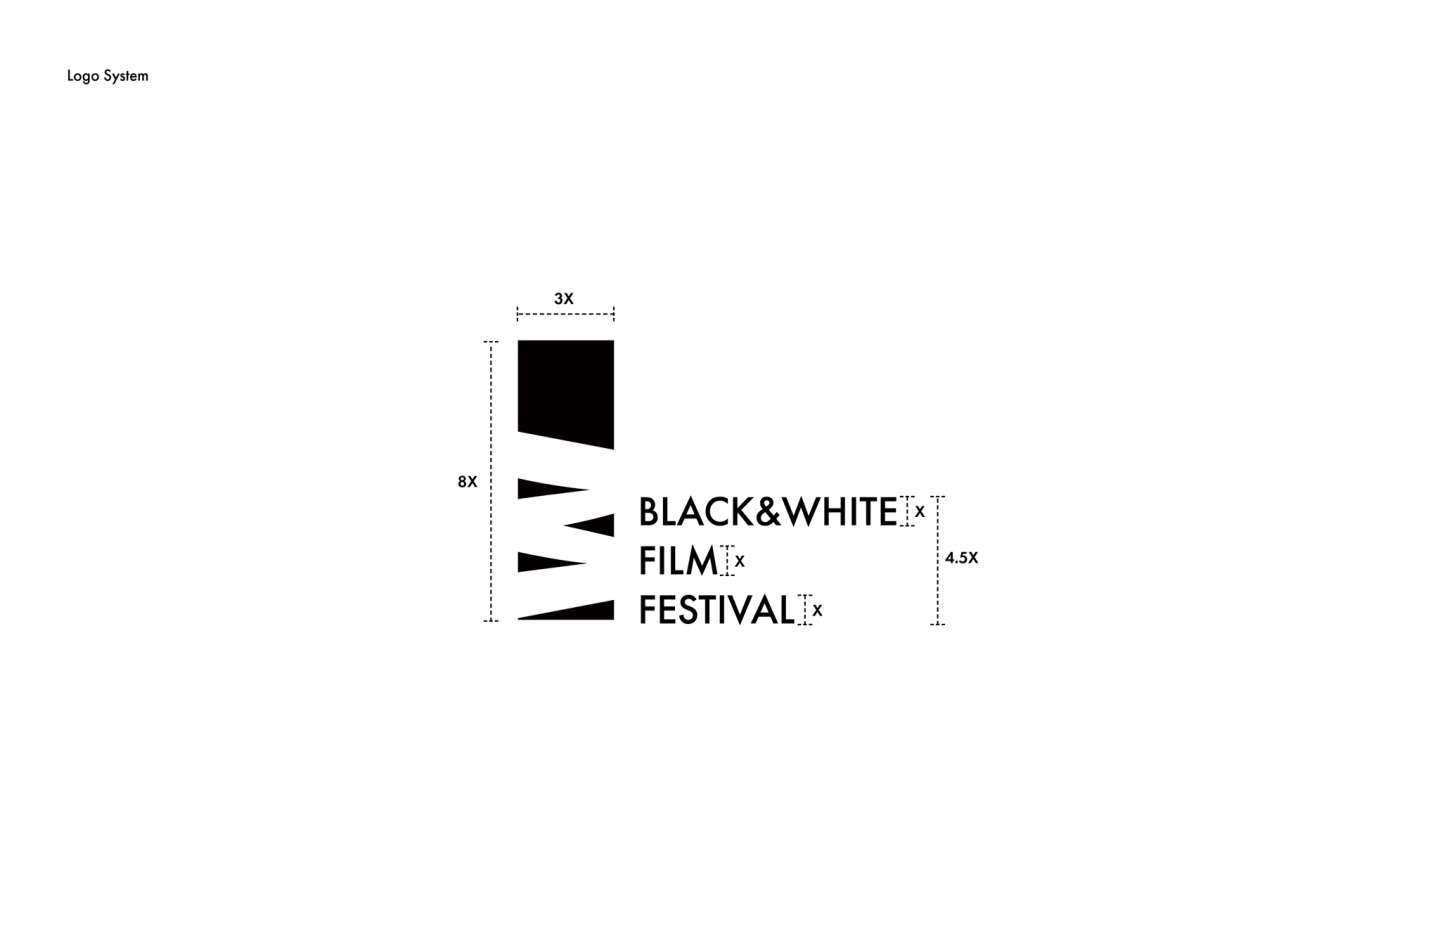 Black & White Film Festival